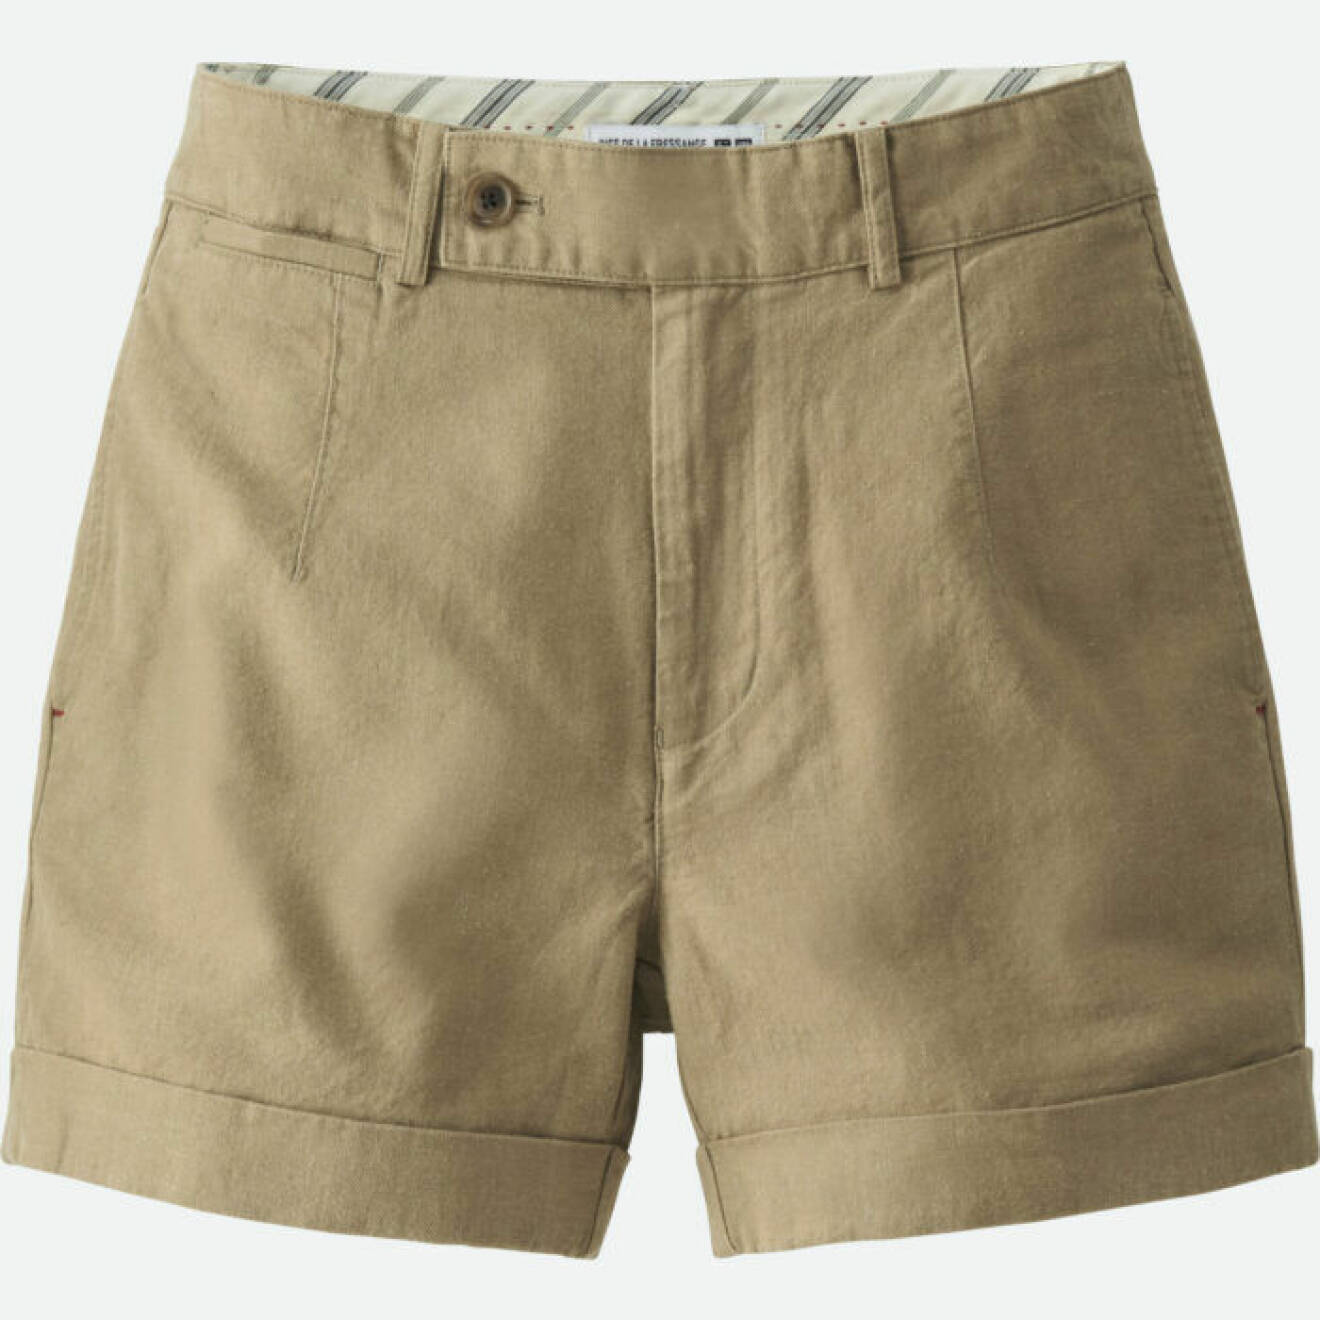 Khakifärgade shorts